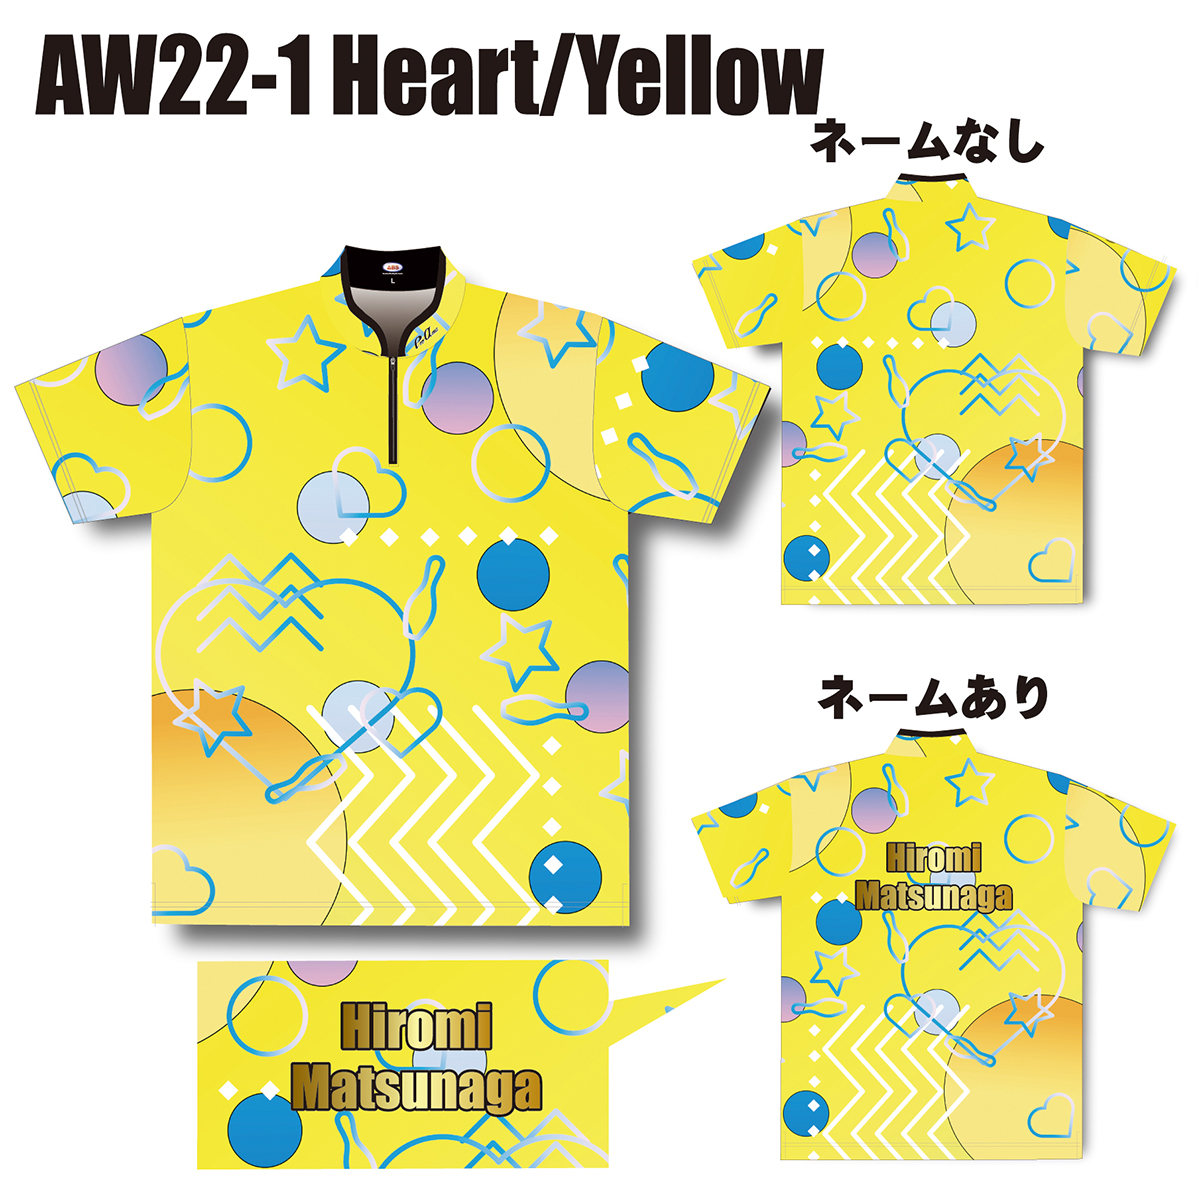 2022スプリングモデル(AW22-1 Heart/Yellow)